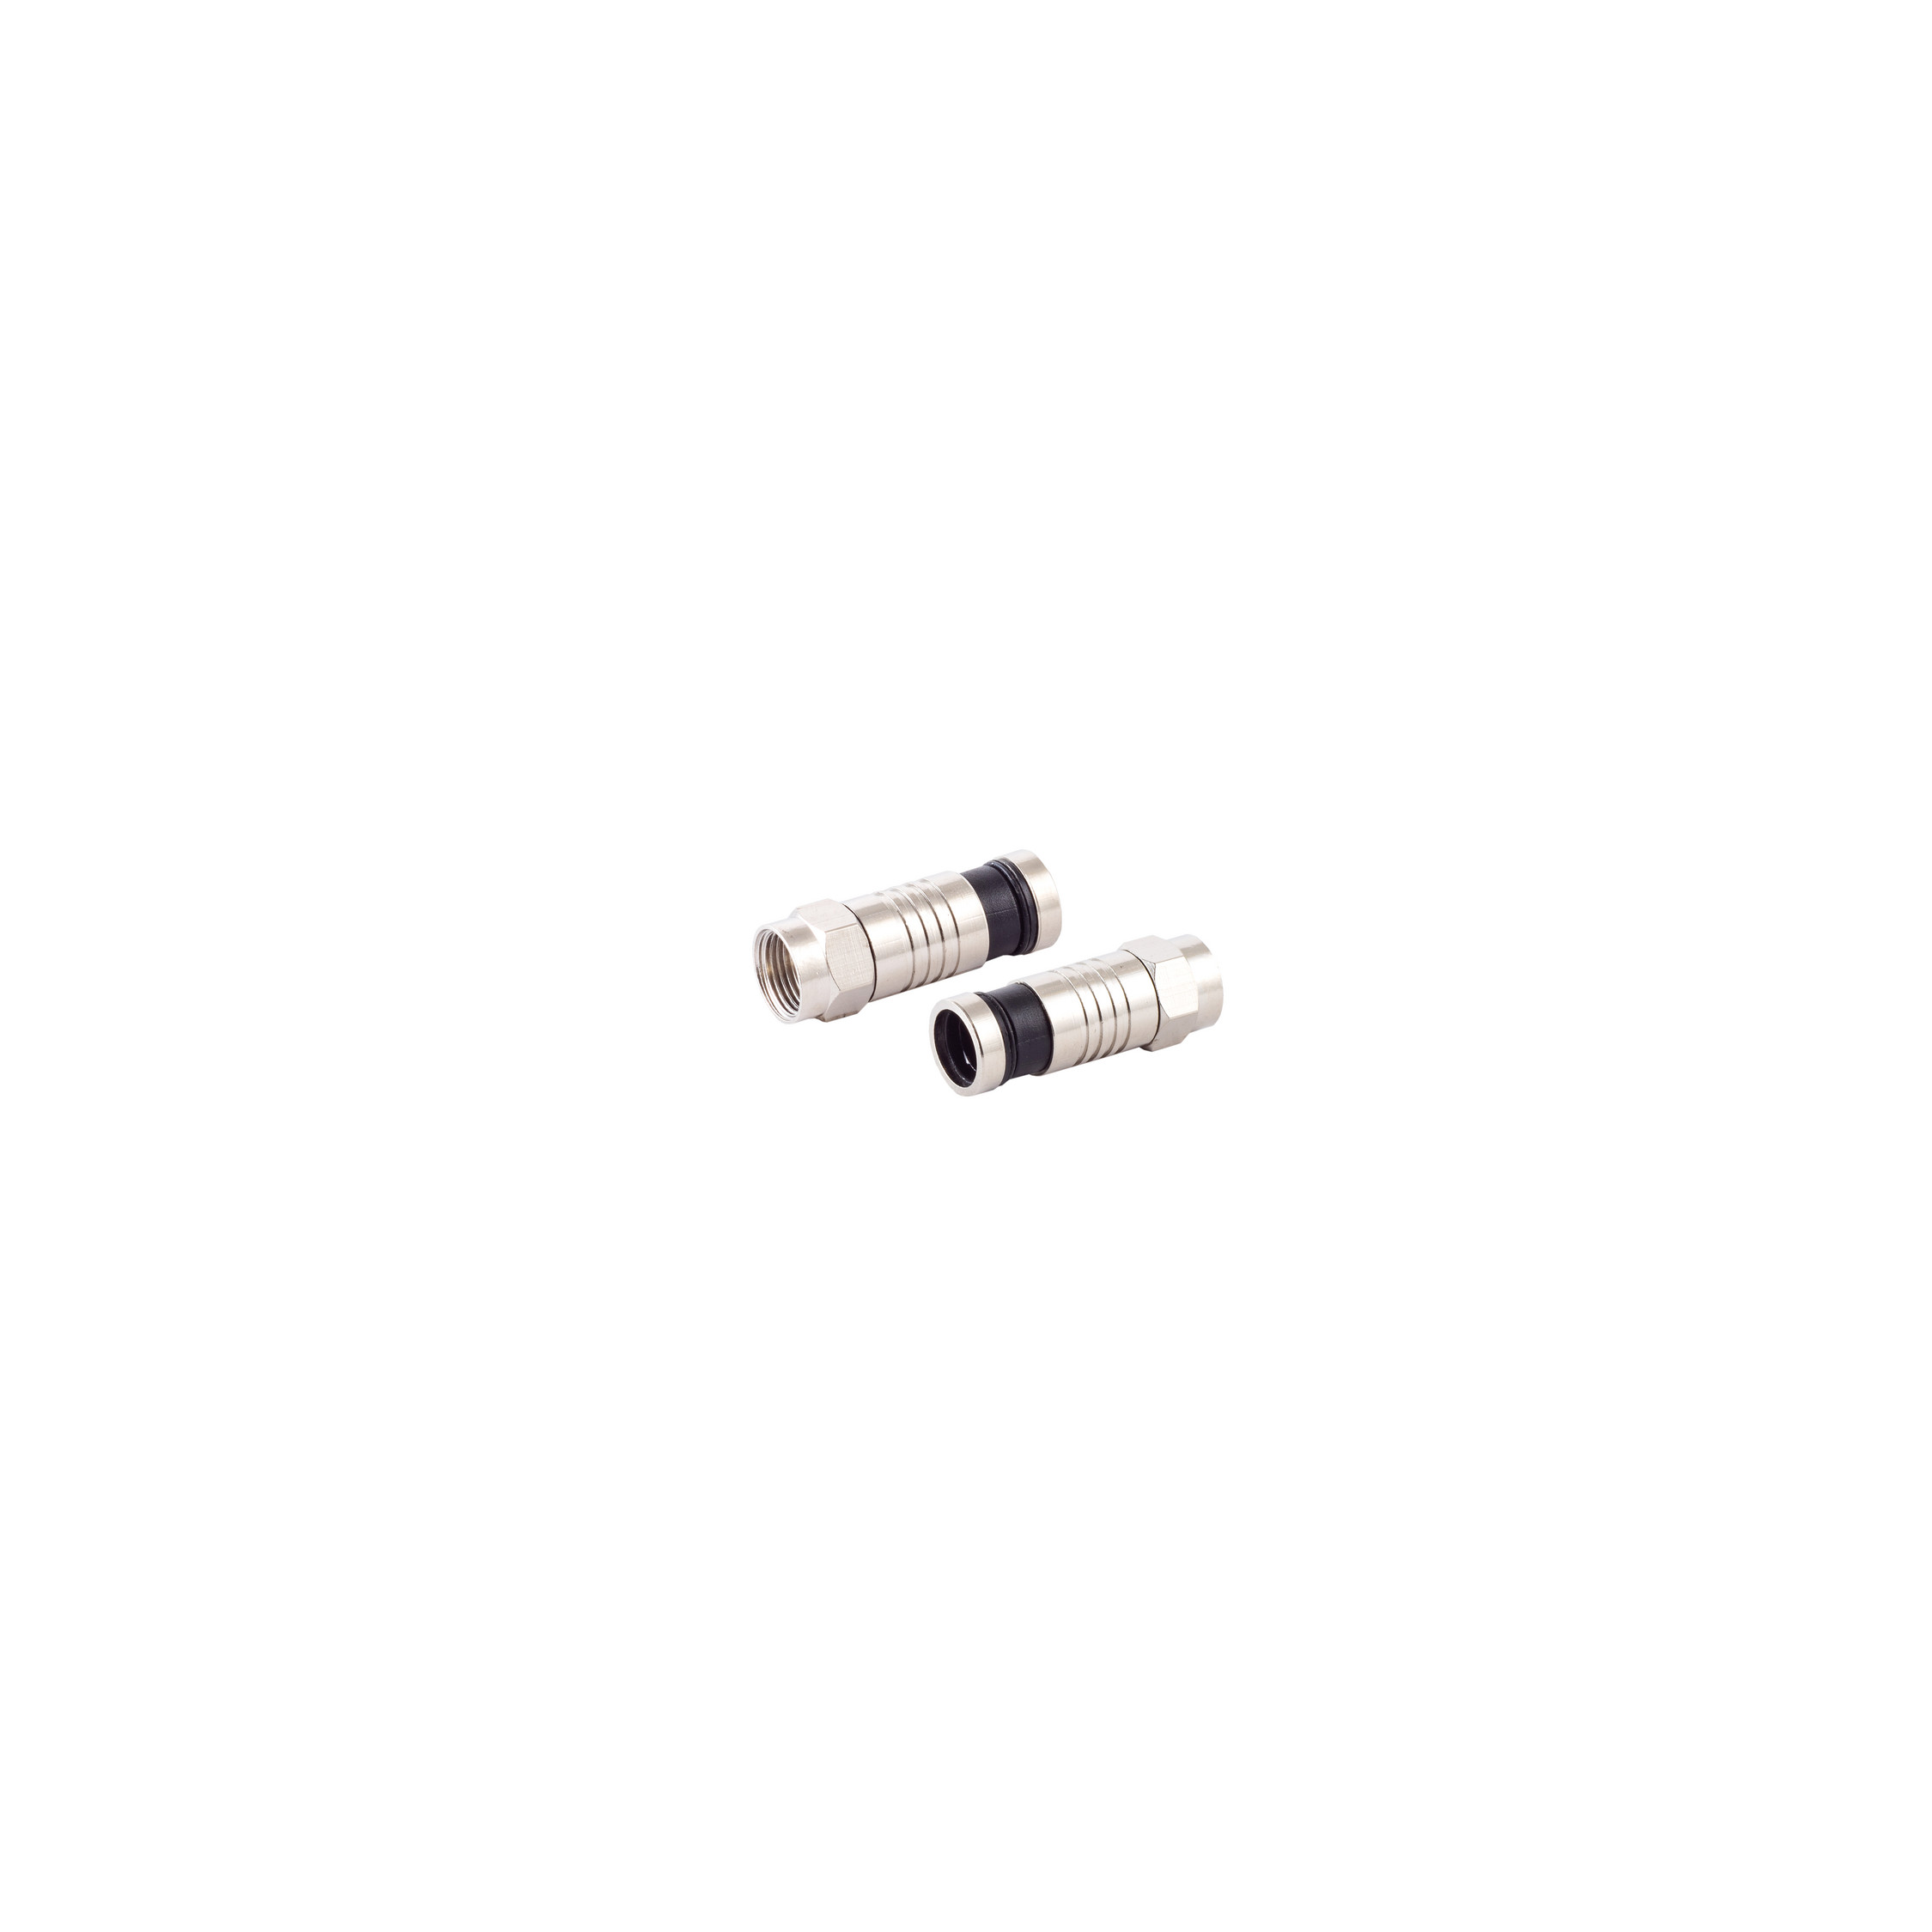 S/CONN MAXIMUM CONNECTIVITY F-Kompressionsstecker Kabel & Adapter 7,2mm SAT für Stecker